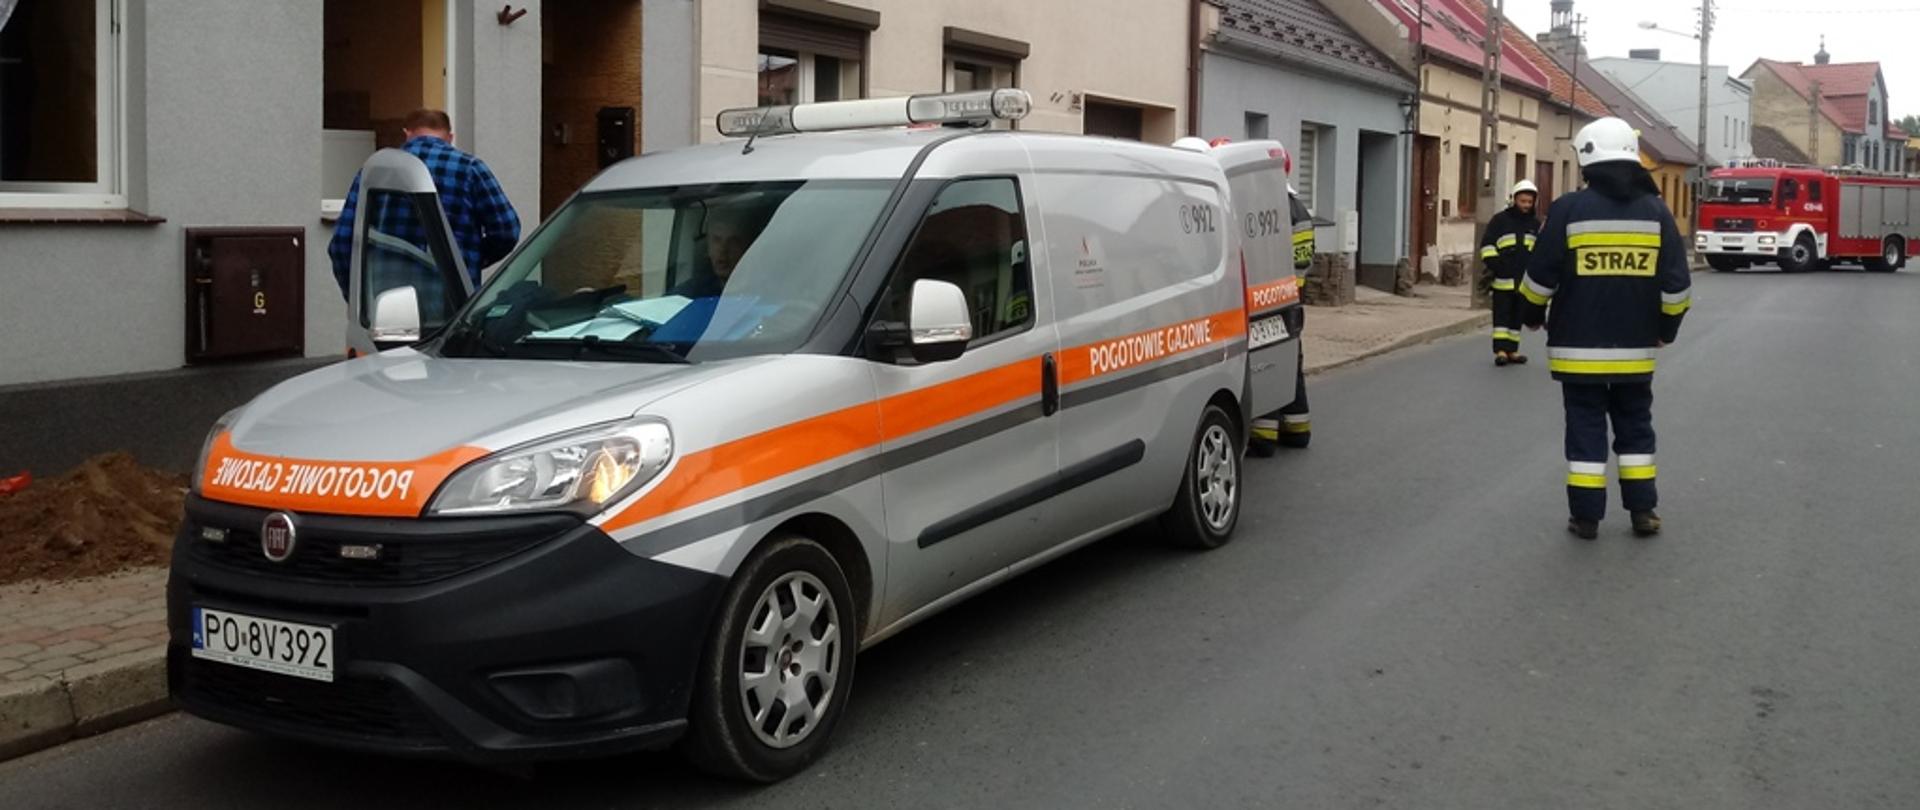 Na zdjęciu znajduje się samochód pogotowia gazowego podczas akcji ratowniczej w Pogorzeli, gdzie został uszkodzony gazociąg średniego ciśnienia.